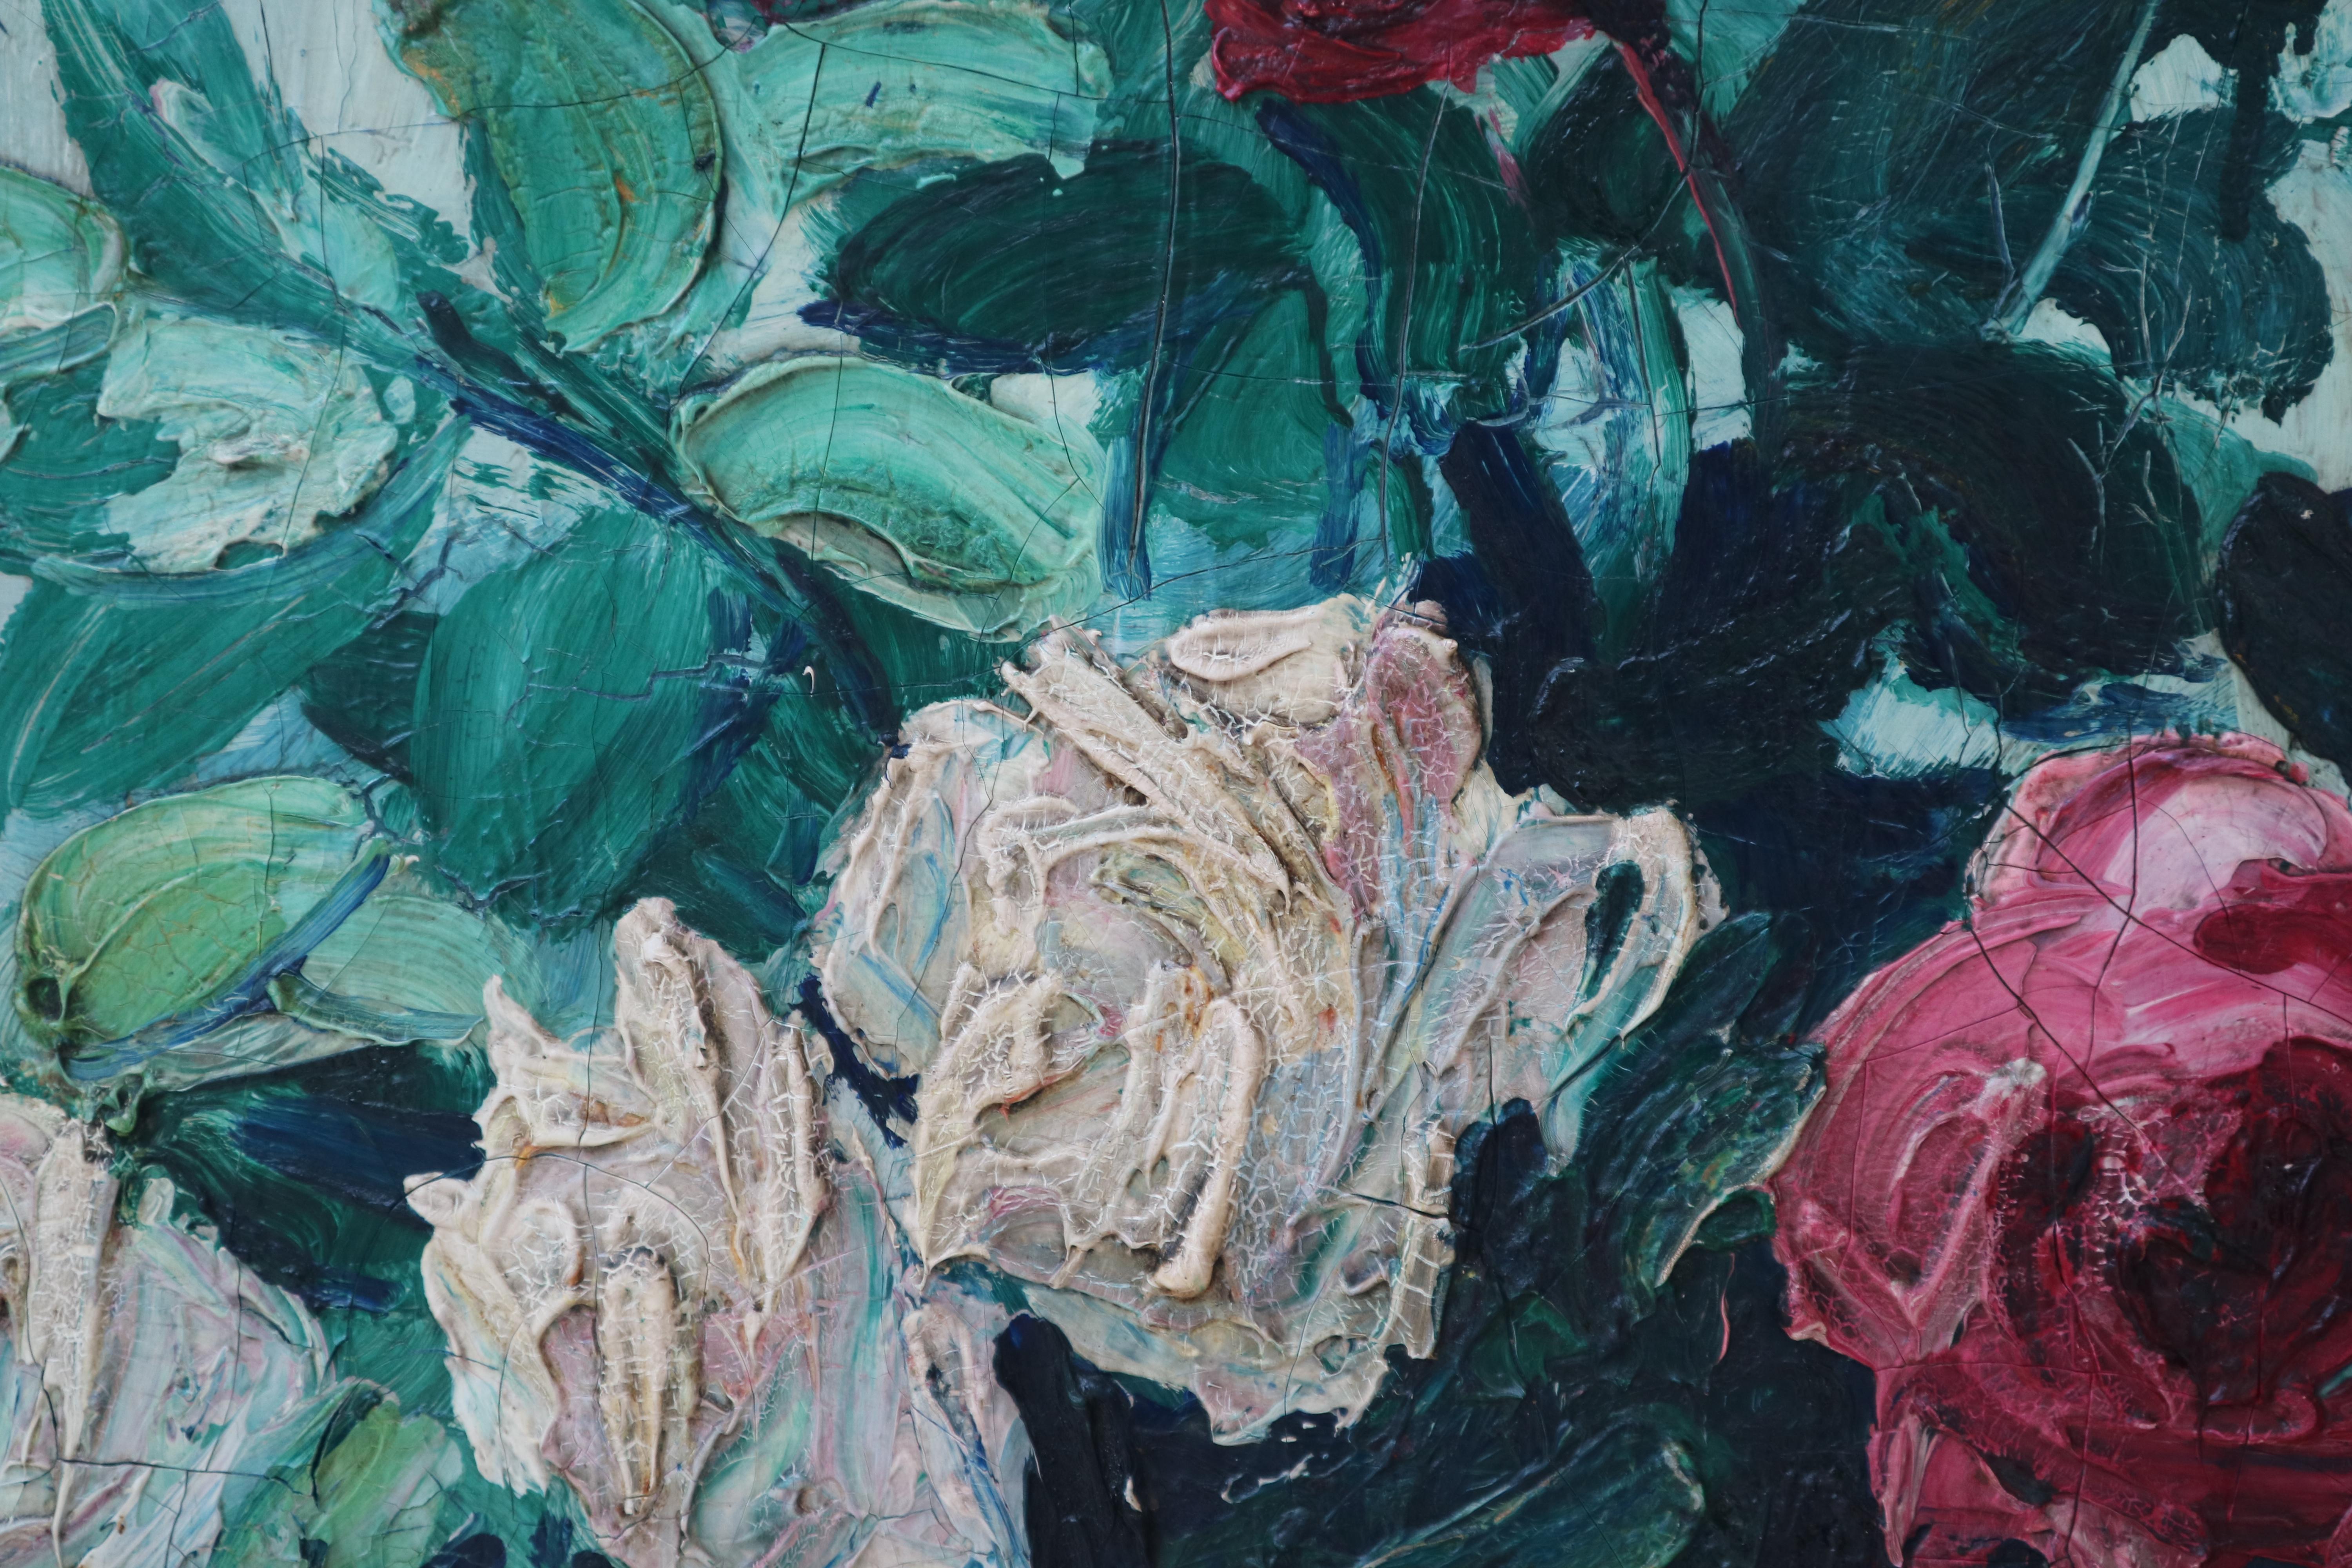 Französischer Maler, Postimpressionist
Stillleben mit Blumen, Öl auf Leinwand 120x90 cm.

Provenienz: Pariser Privatsammlung

Das vorgeschlagene Gemälde stellt ein stolzes Beispiel der französischen postimpressionistischen Malerei dar, die reinen